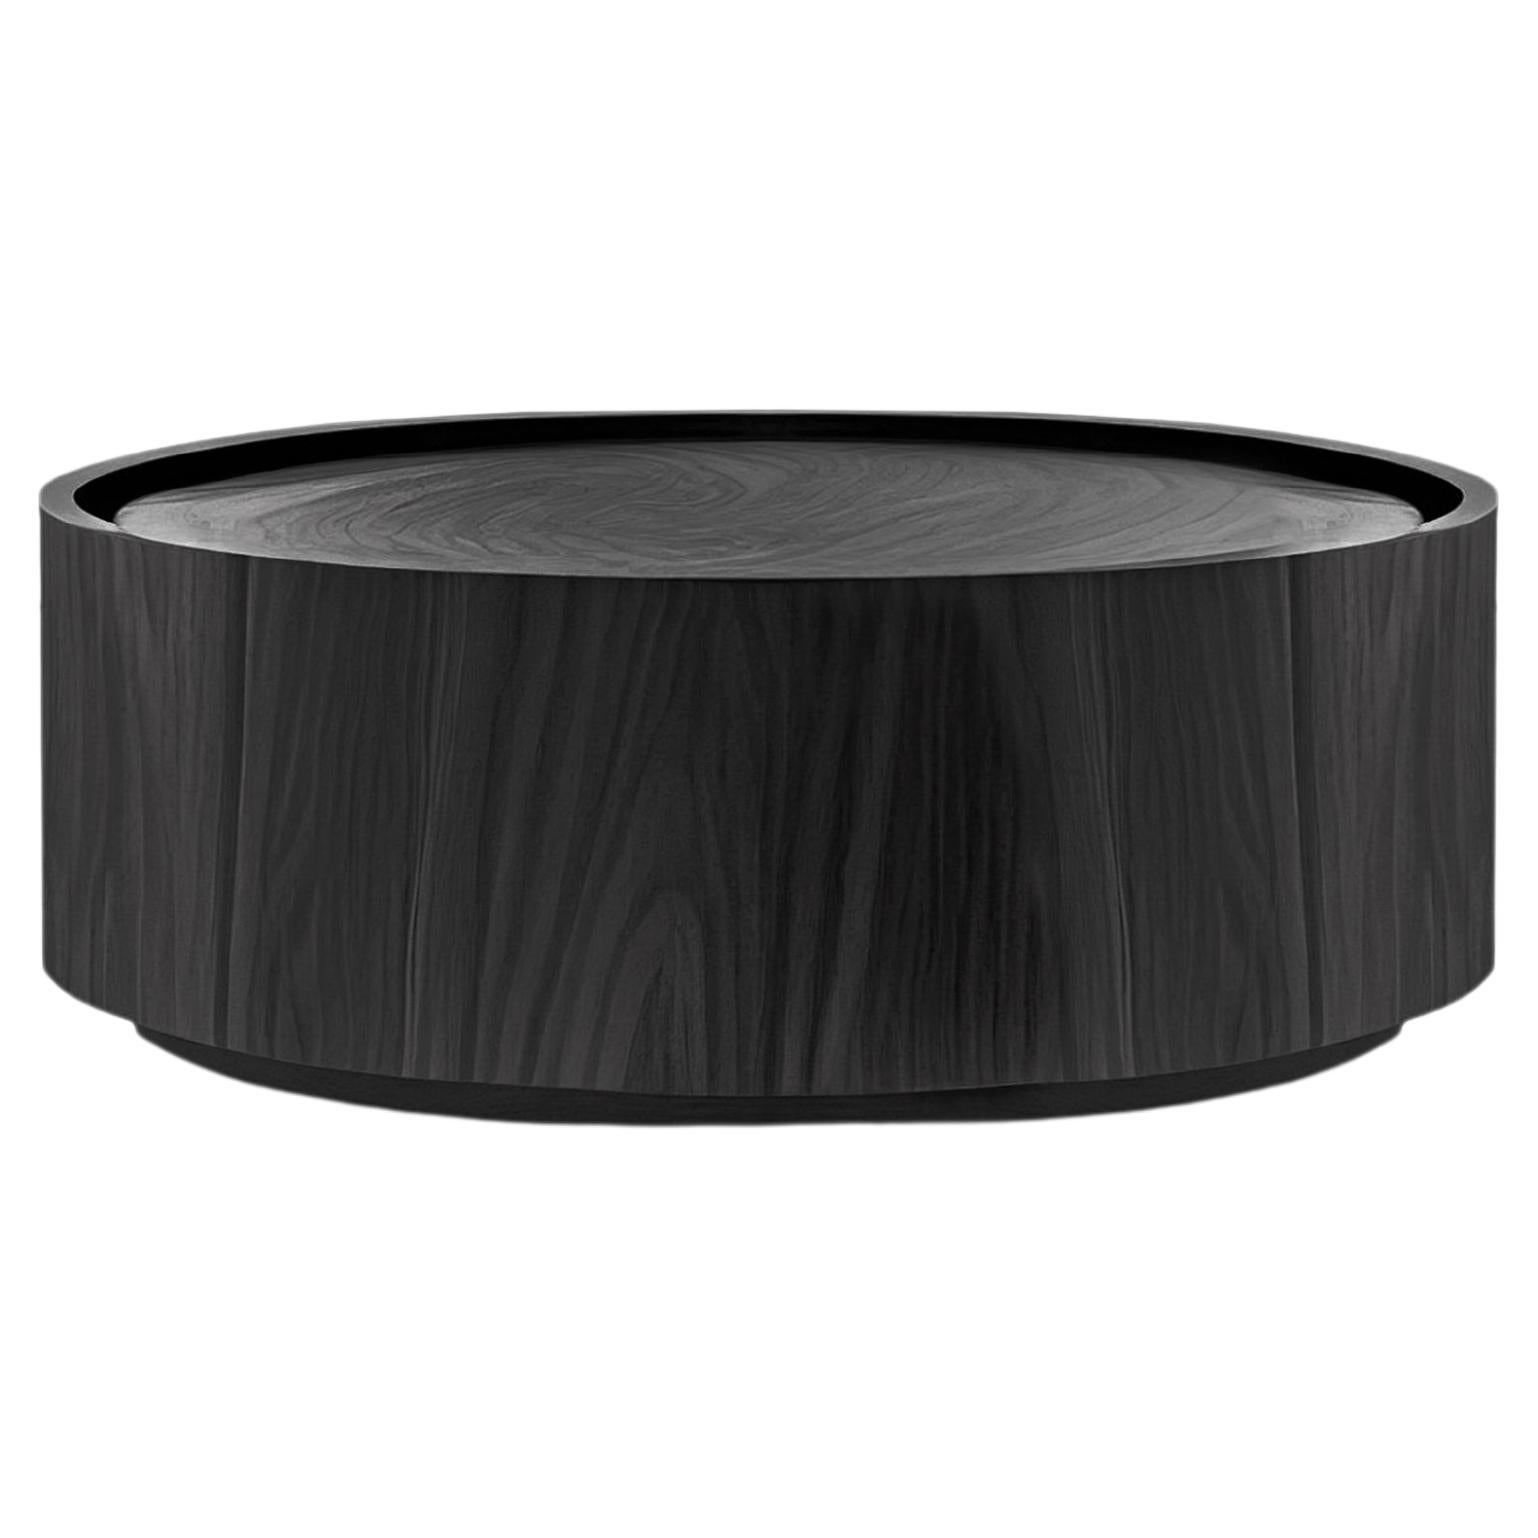 Table basse ronde fabriquée en placage de bois teinté noir  par NONO Furniture